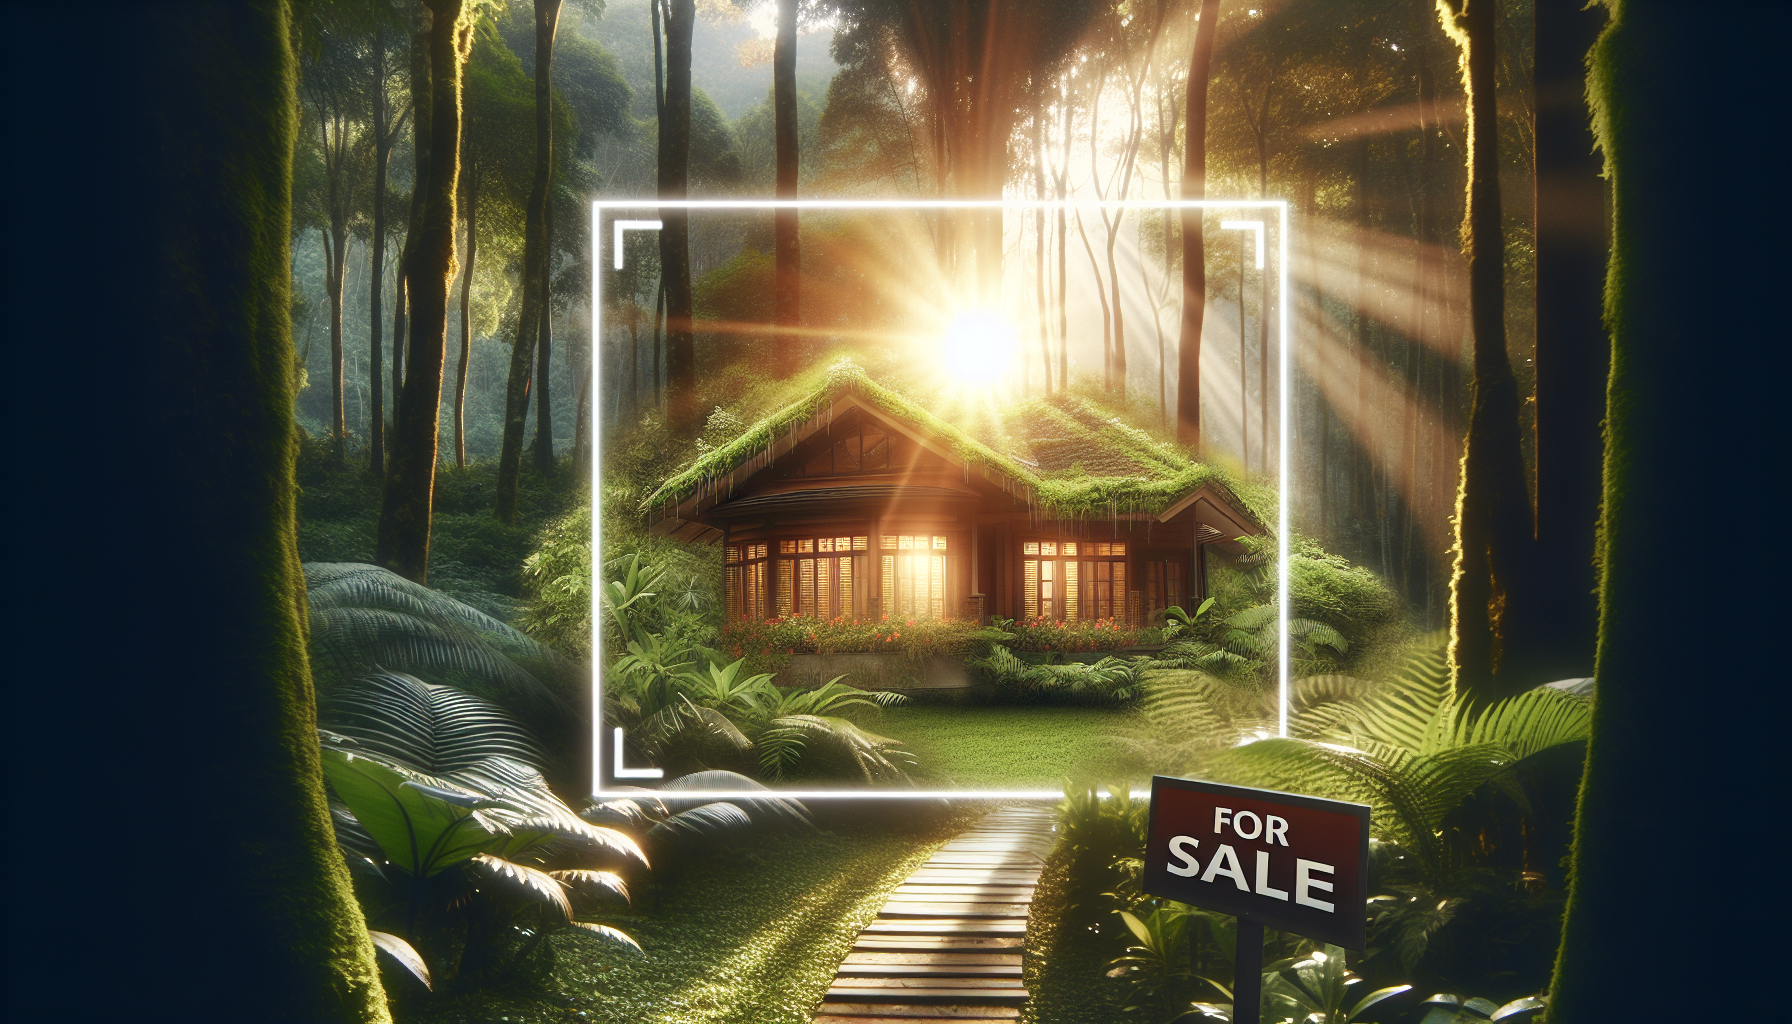 découvrez une charmante maison à vendre à forest, idéalement située pour votre futur projet immobilier.